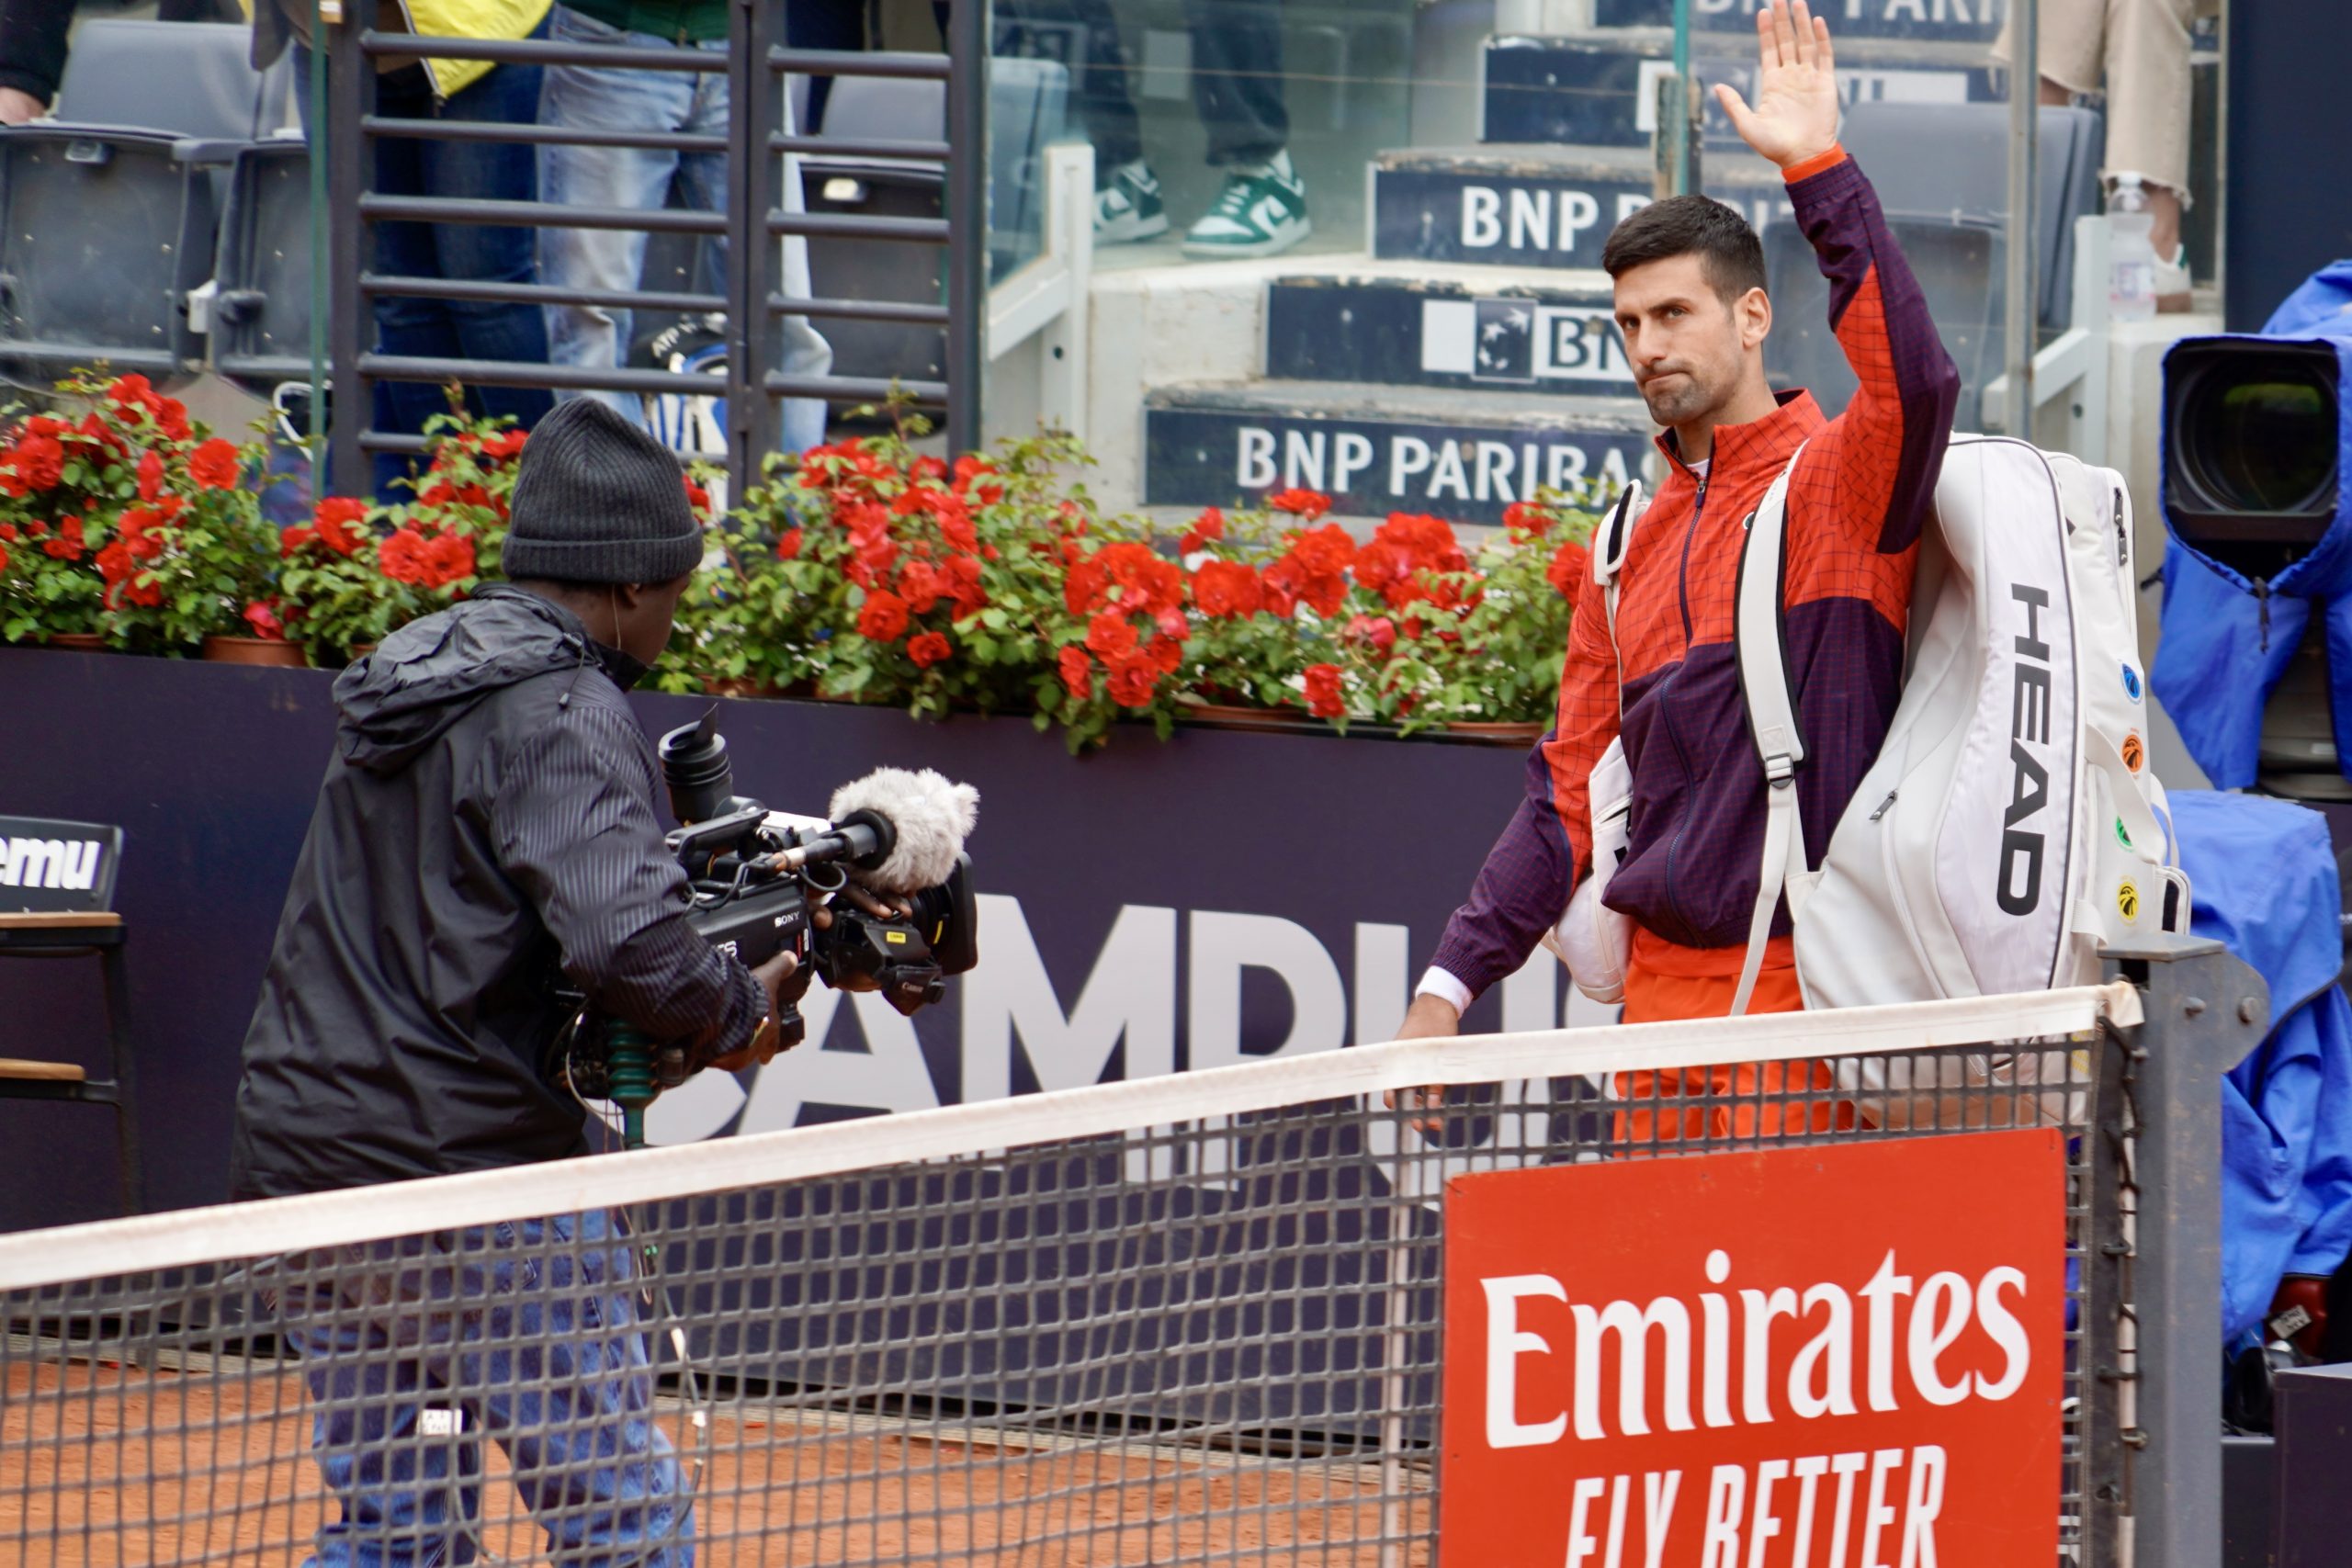 Djokovic is back on top - Updated tennis rankings